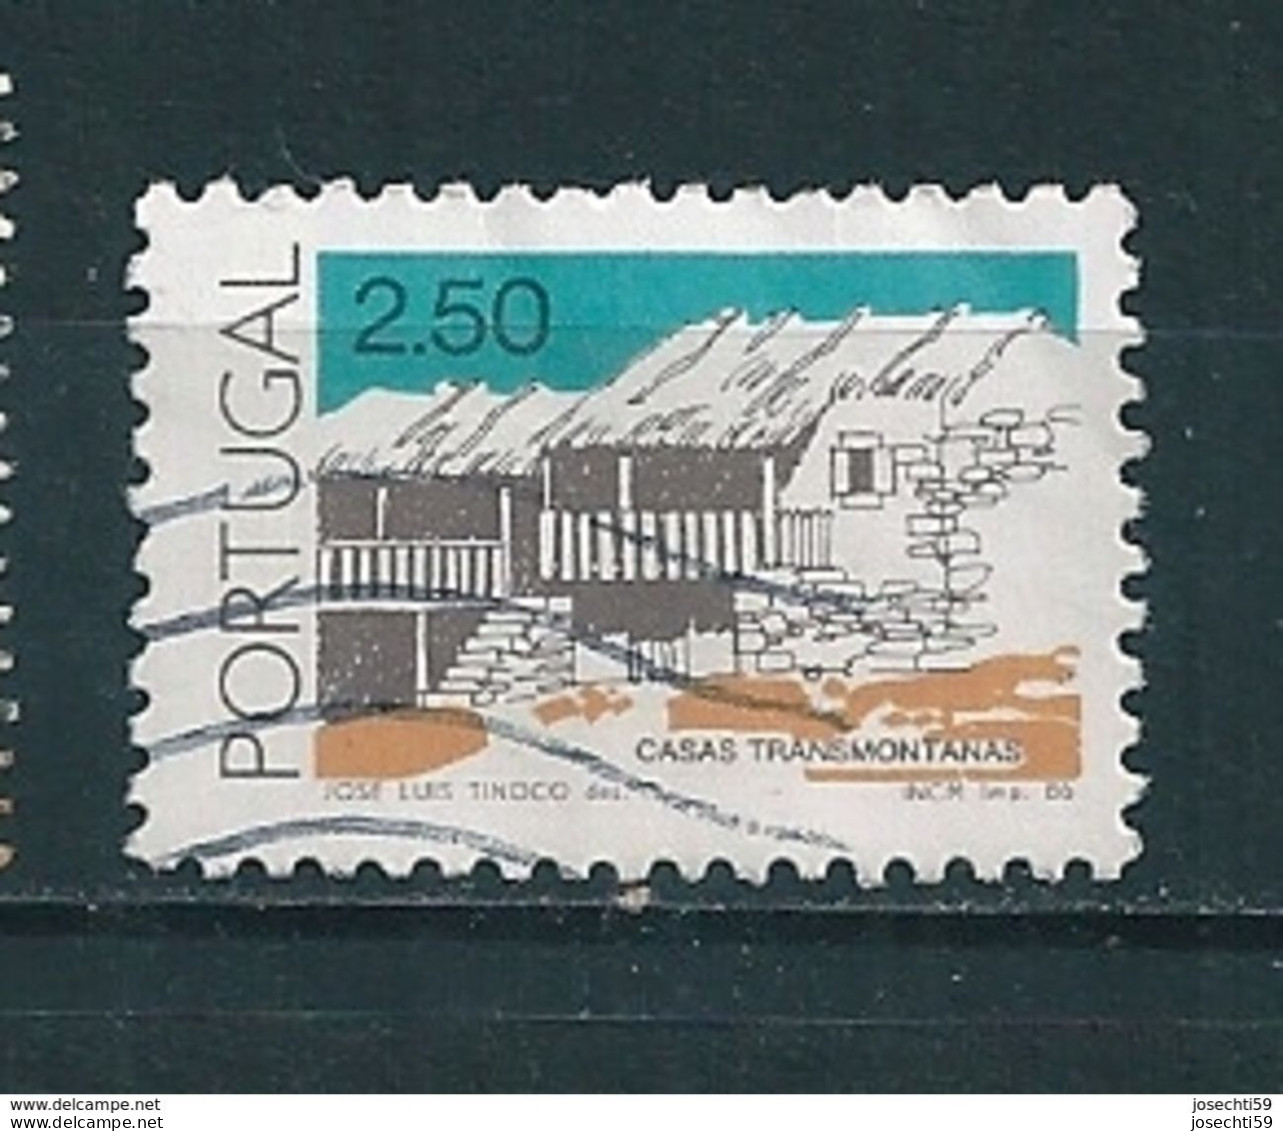 N° 1659 Maison De Tramontanas 2,50 Timbre Portugal Oblitéré 1986 - Oblitérés